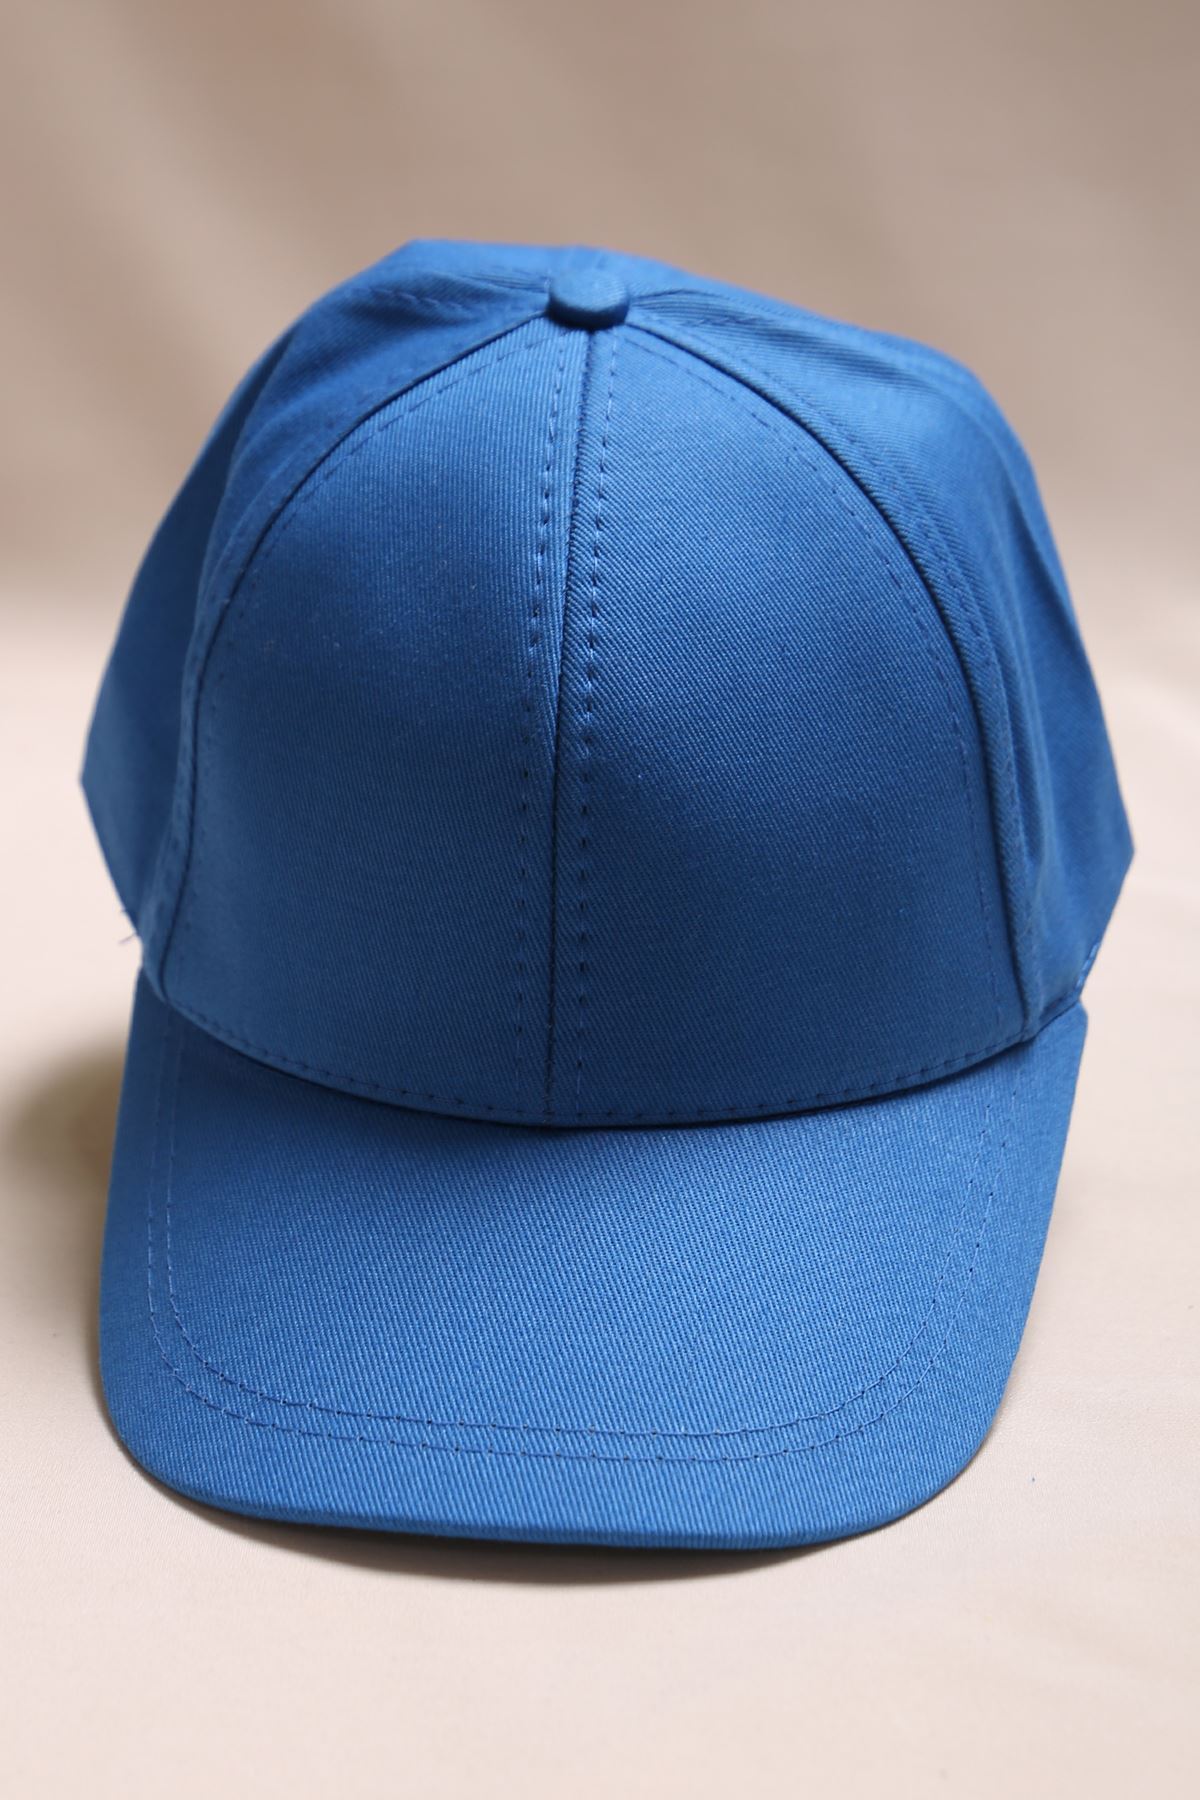 CLZ275 Spor Şapka Mavi